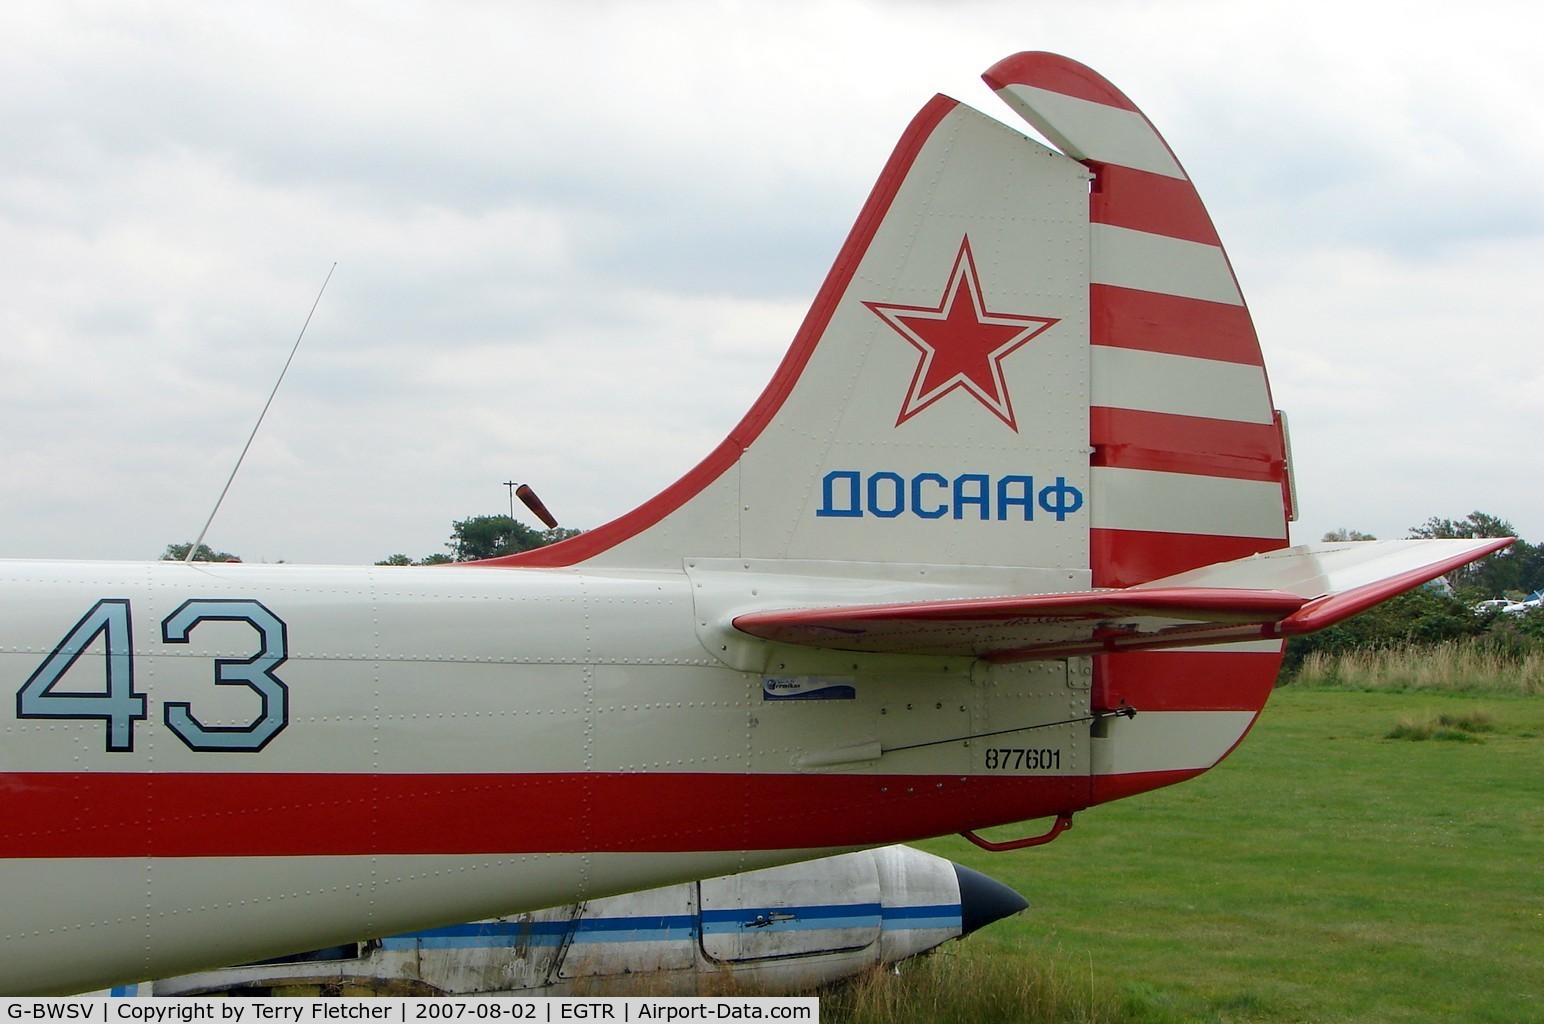 G-BWSV, 1987 Bacau Yak-52 C/N 877601, Yak 52 Blue 43 wears its c/n under the tail